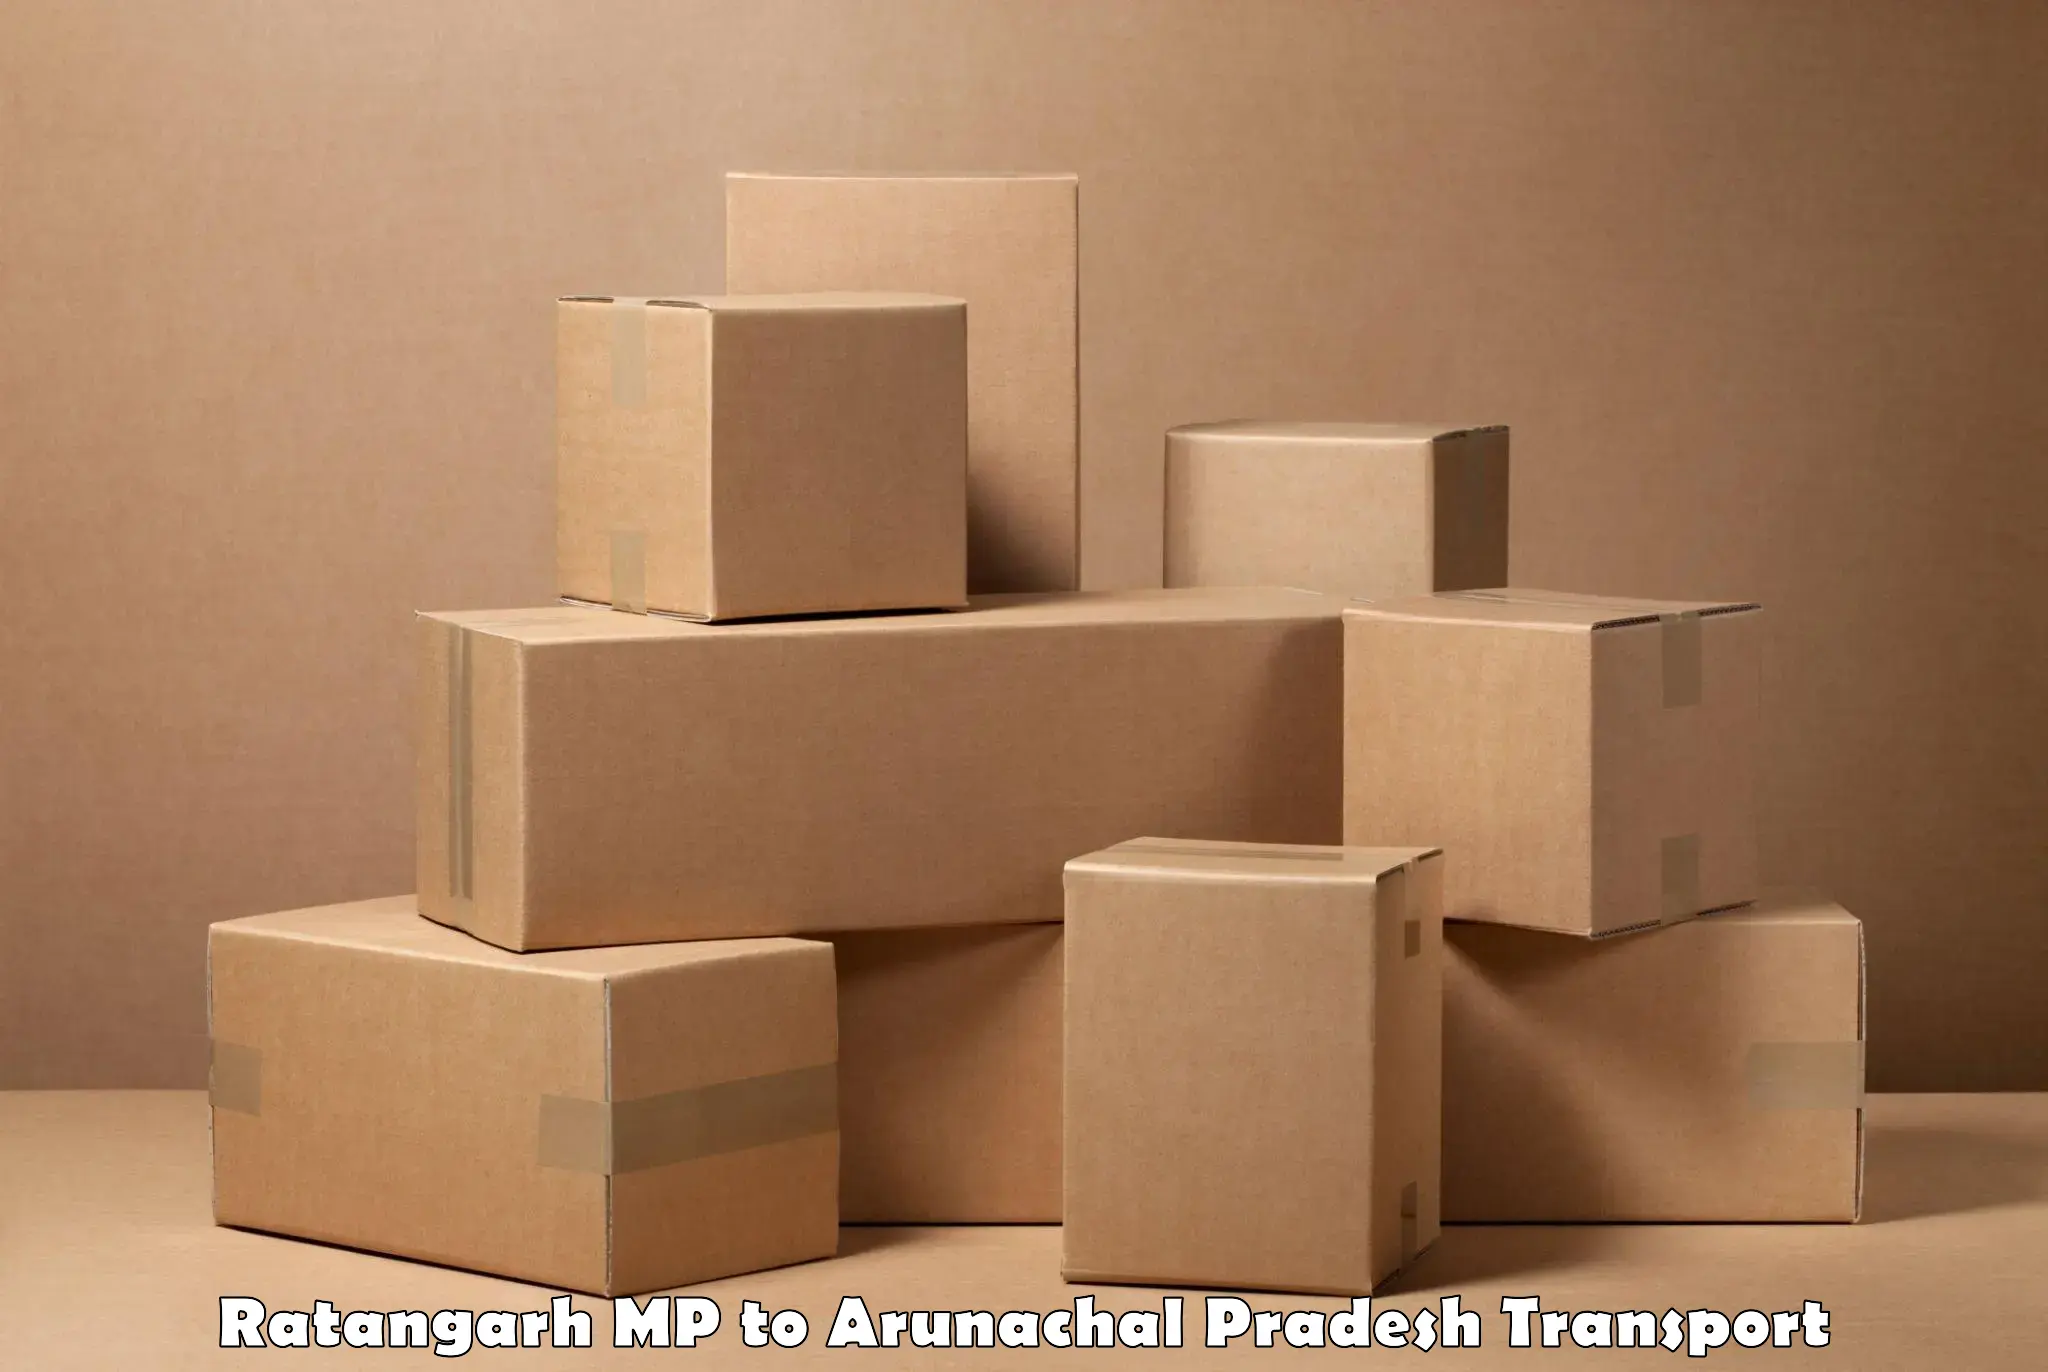 Nearest transport service Ratangarh MP to East Kameng